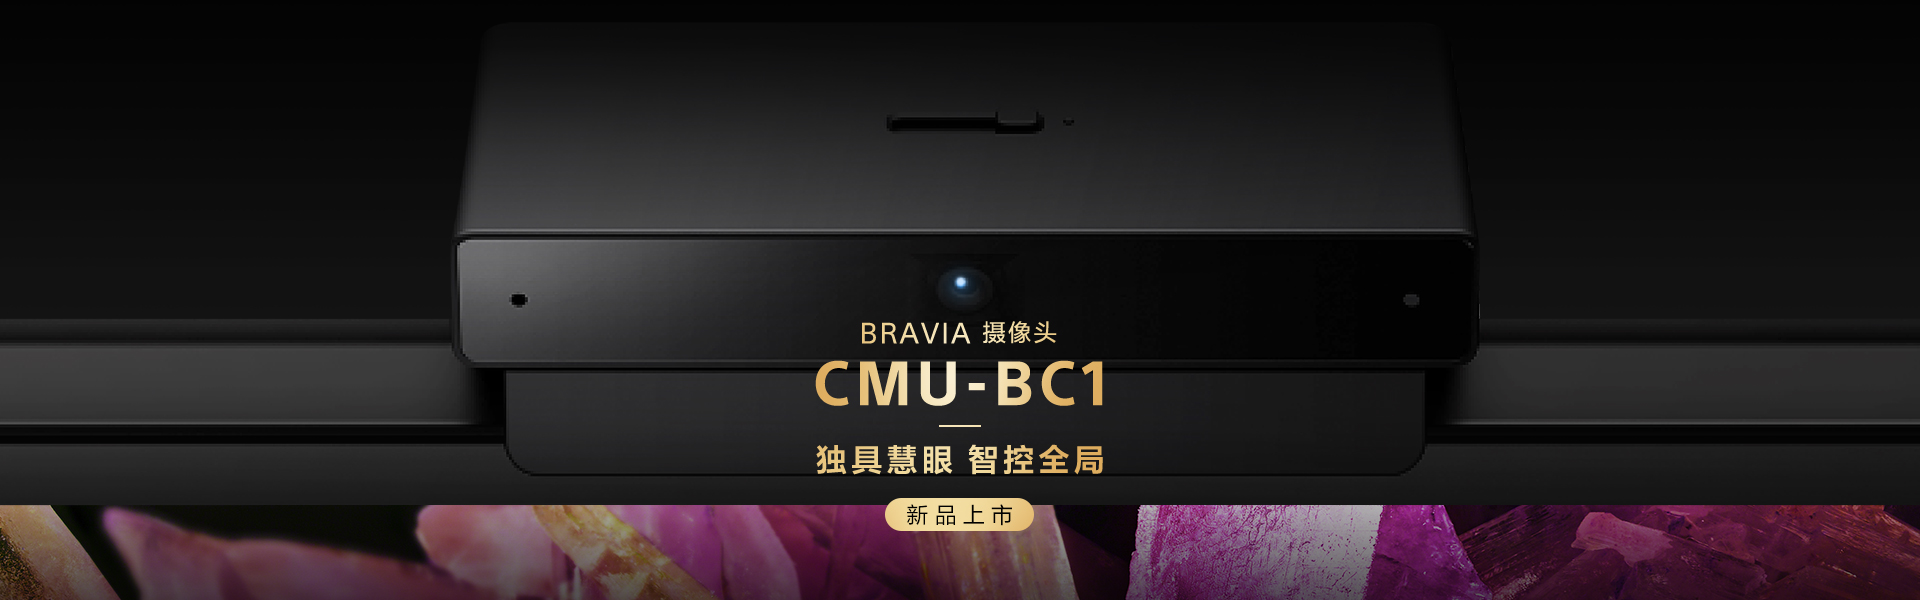 CMU-BC1 BRAVIA摄像头